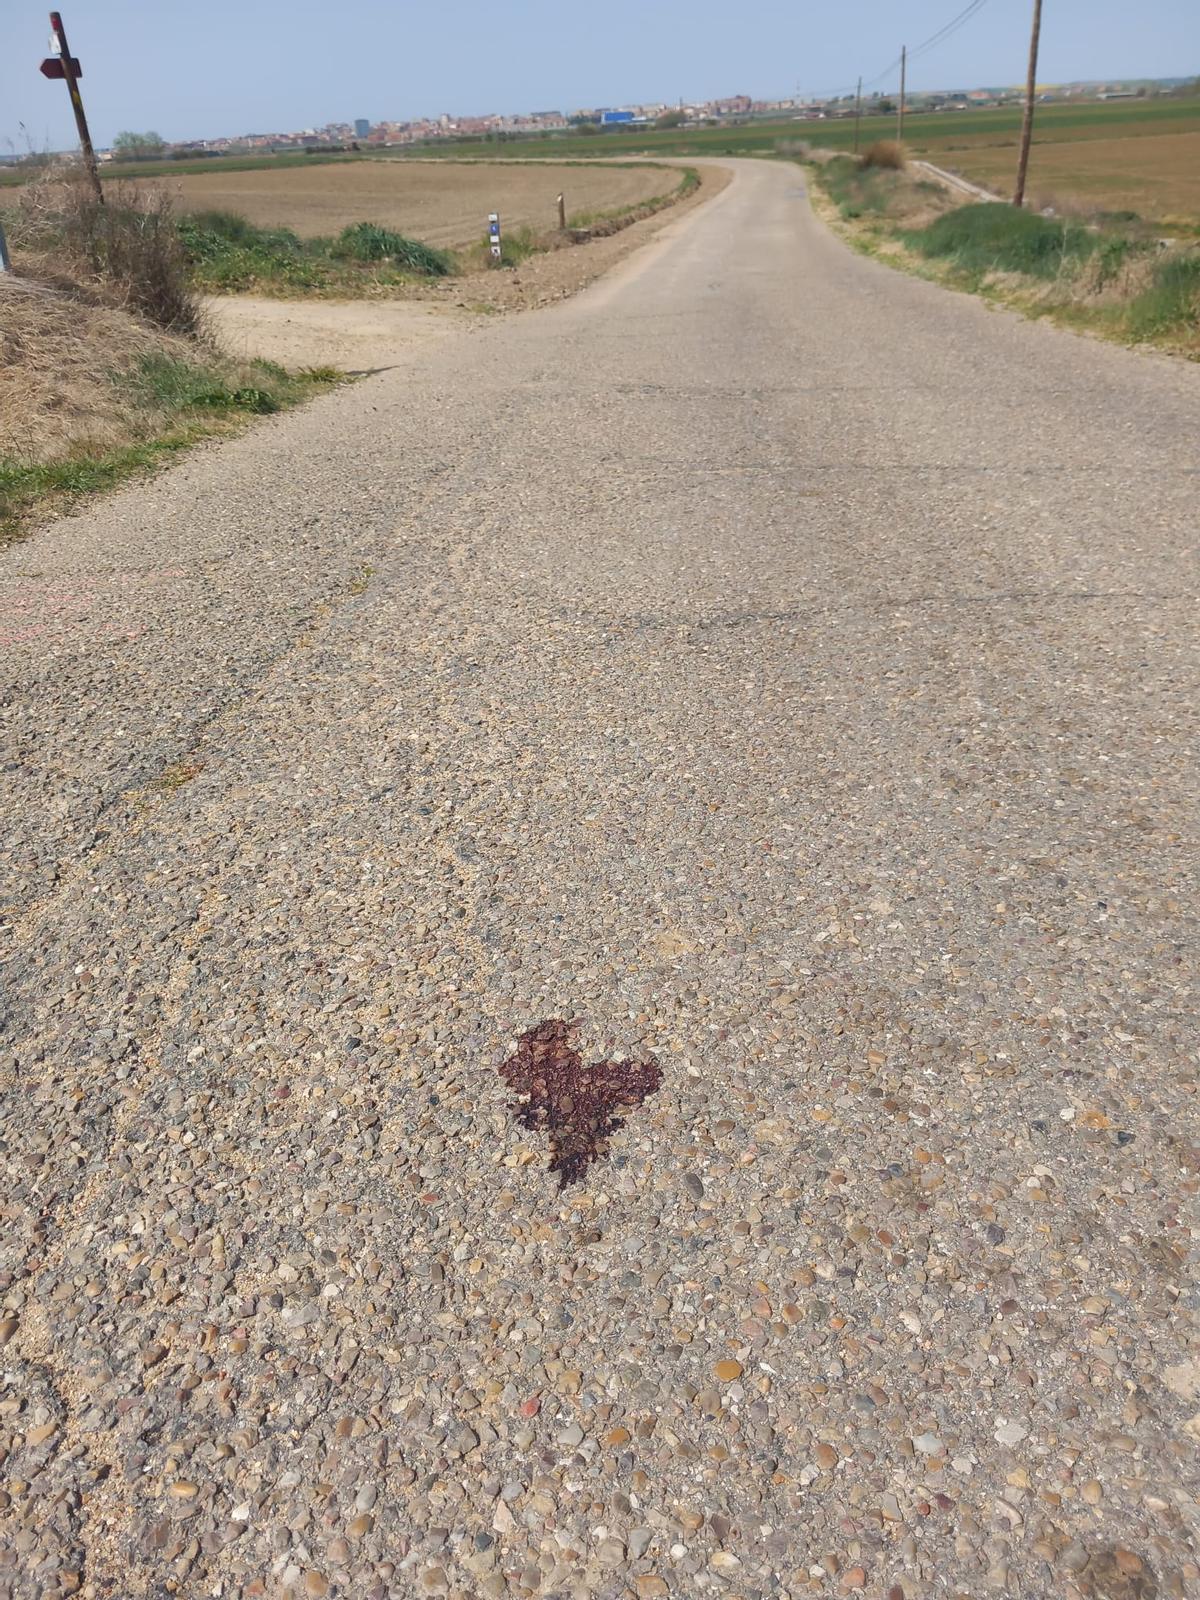 Rastro de sangre del animal en el camino viejo de Villaralbo.